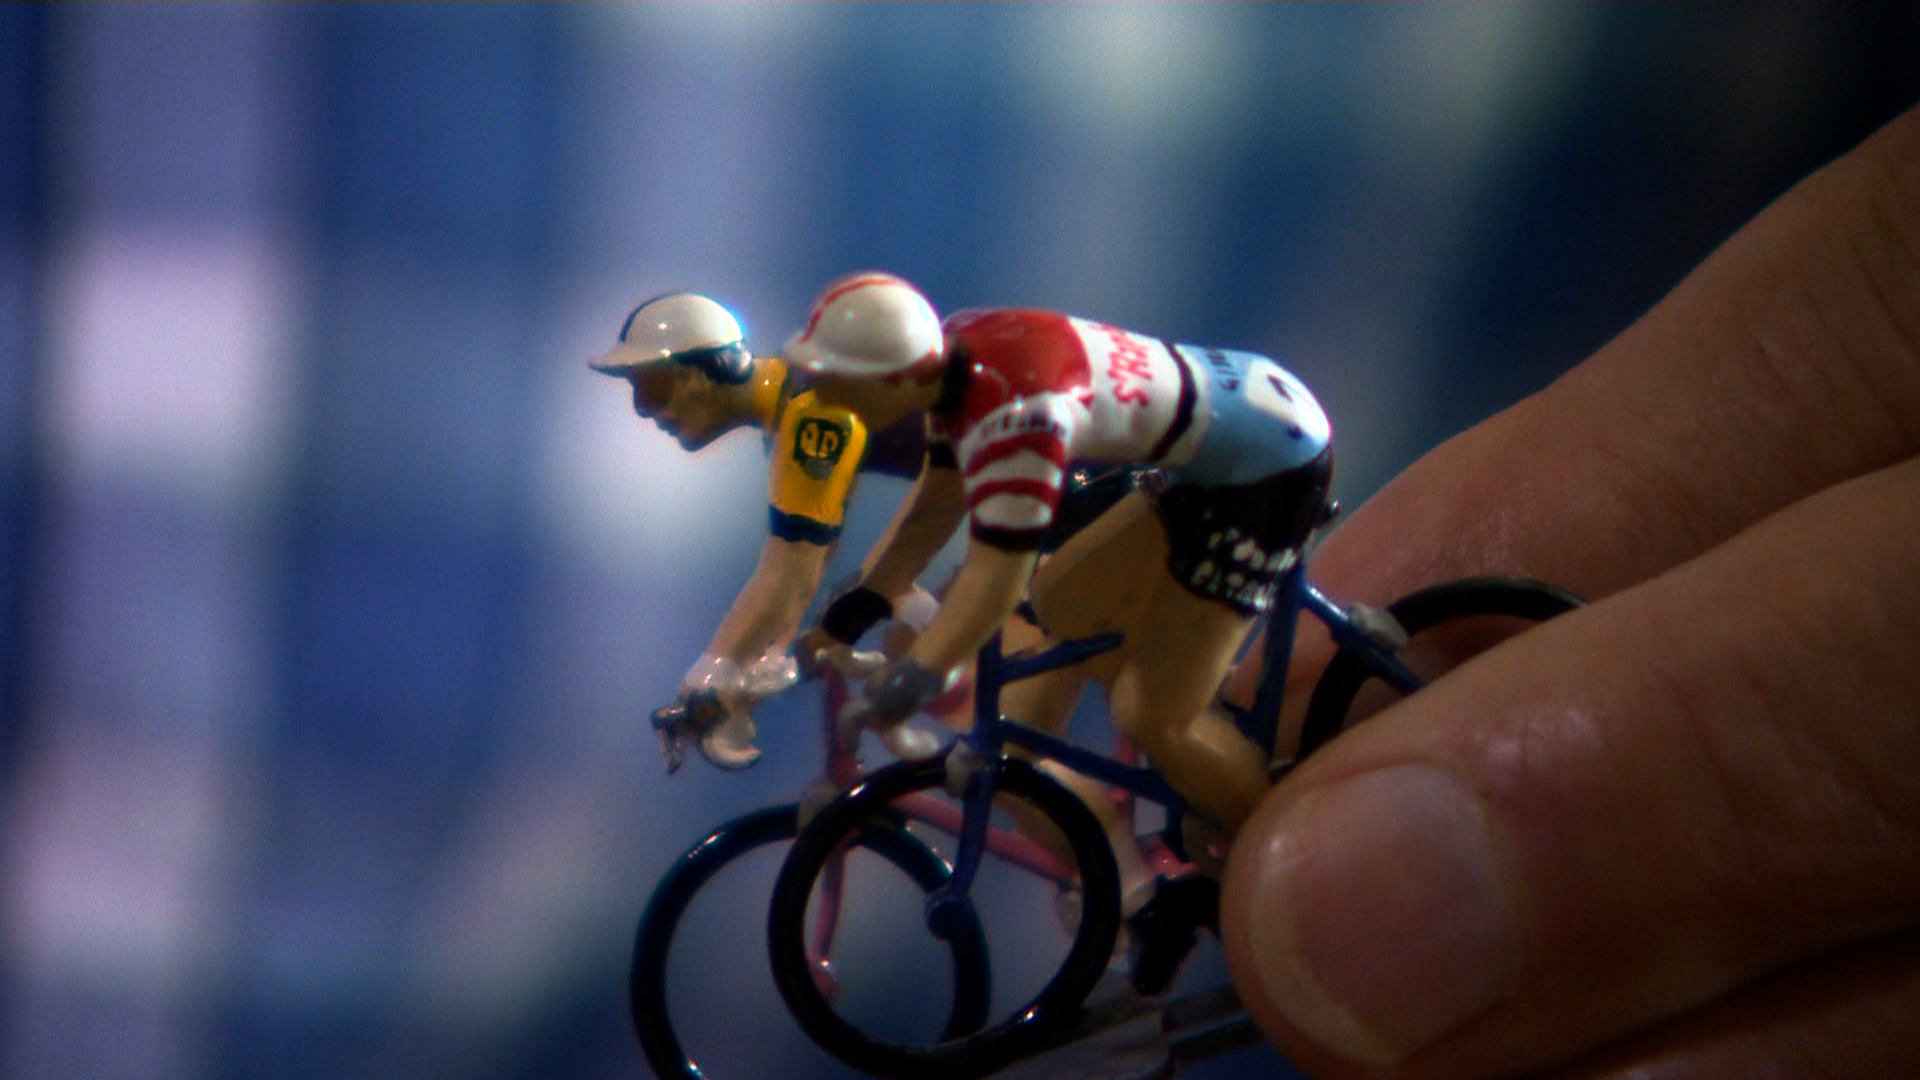 Anquetil le vainqueur, Poulidor le héros de Jean-Louis Saporito (Bip TV)